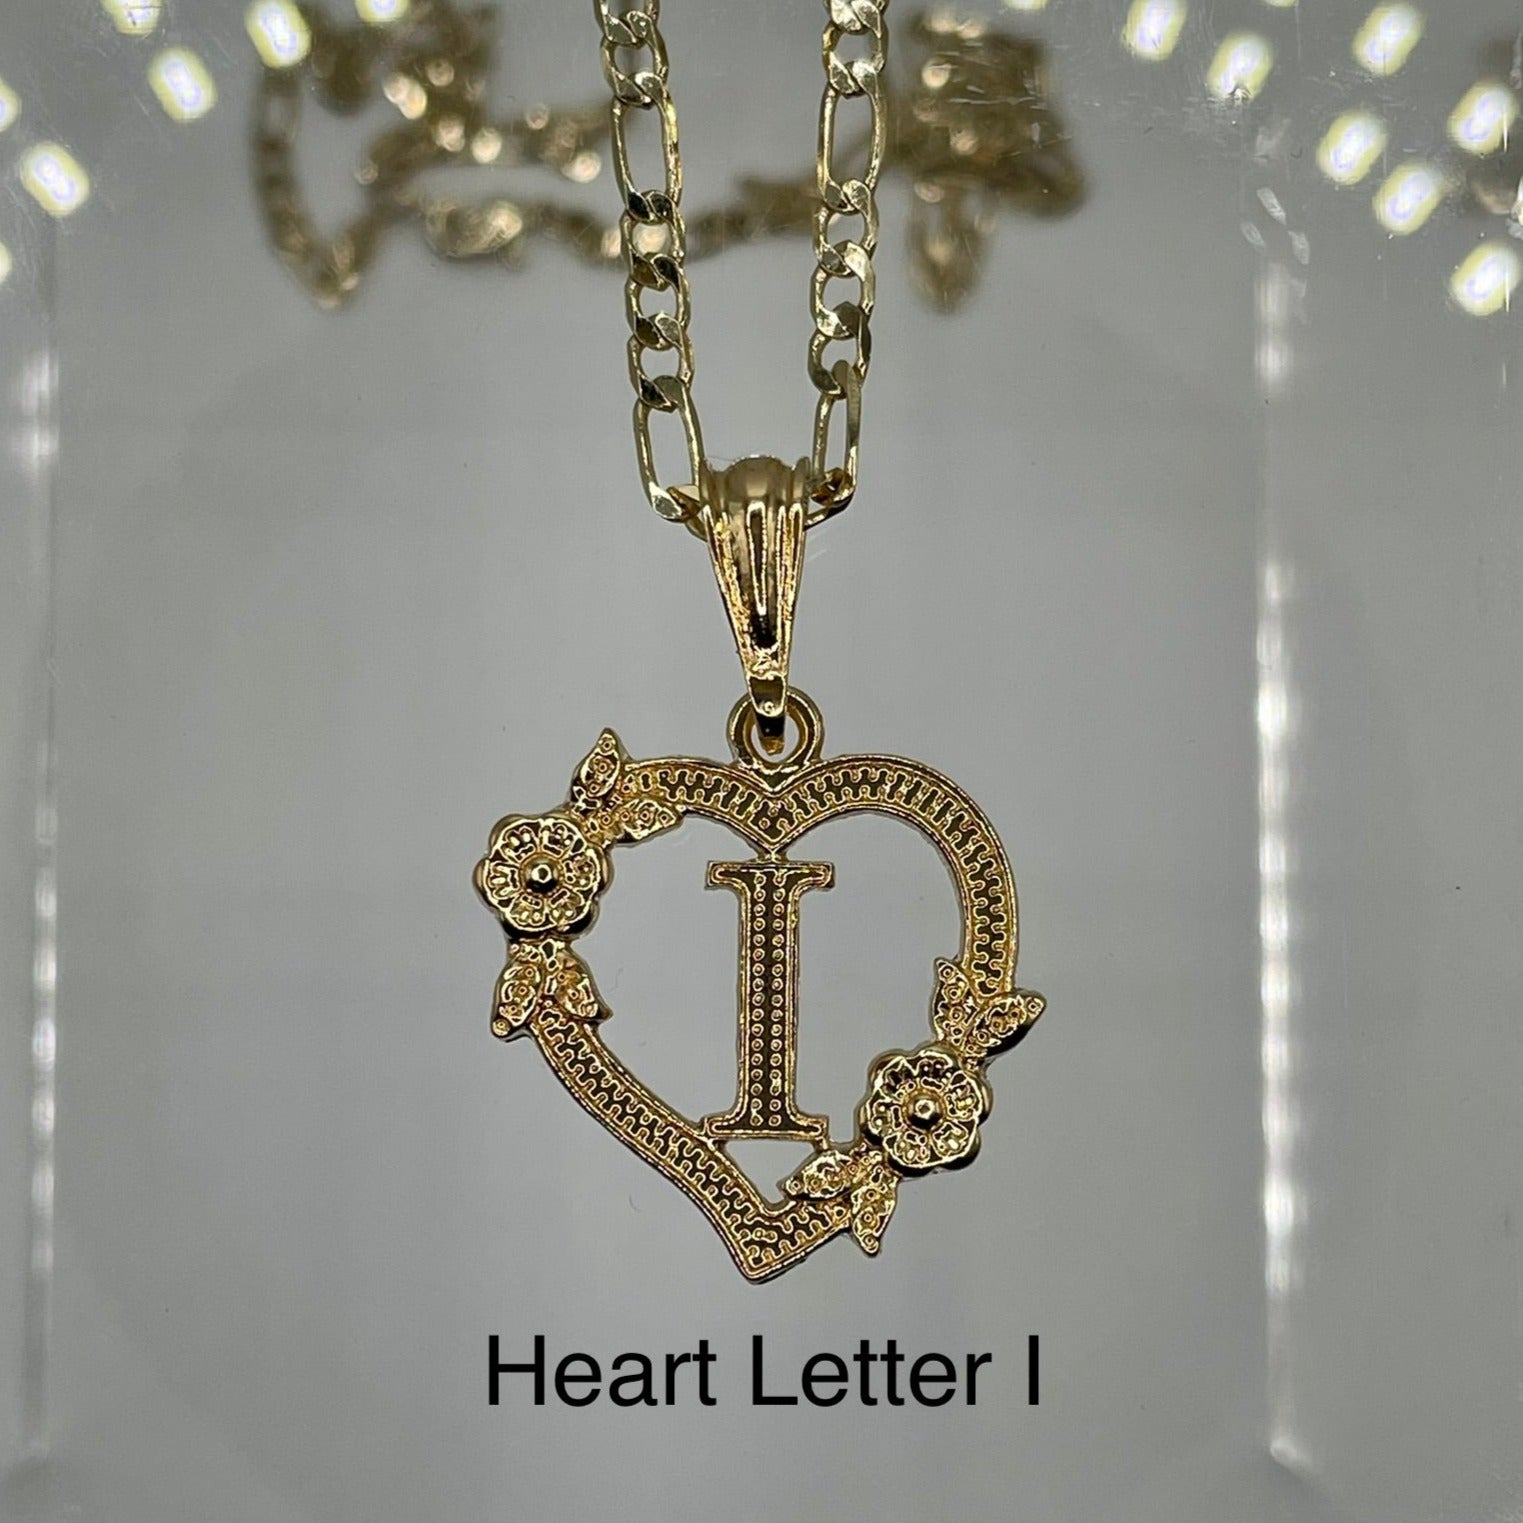 Heart letter I pendant. Gold heart pendant. Letter pendants.